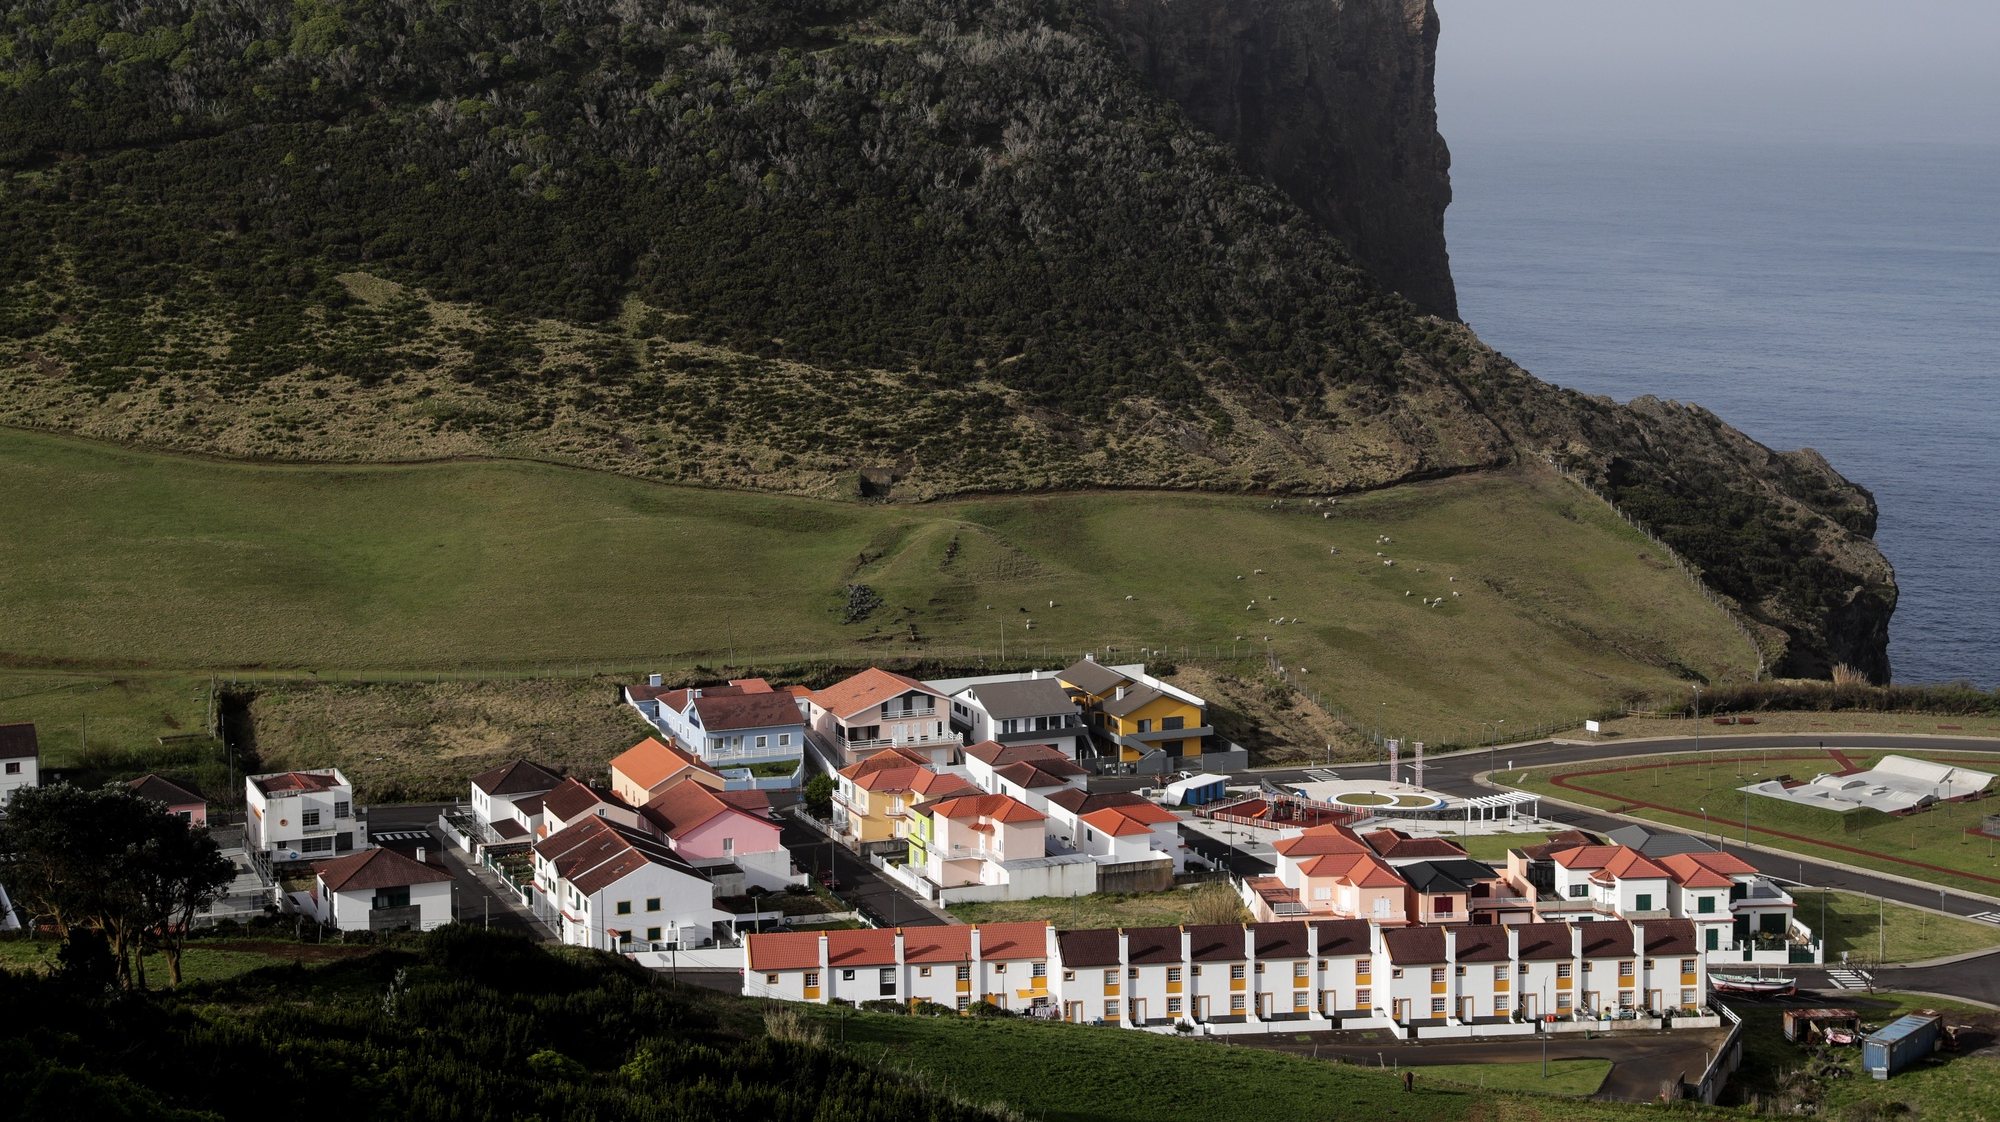 Vista geral de parte da vila de Velas na ilha de São Jorge nos Açores